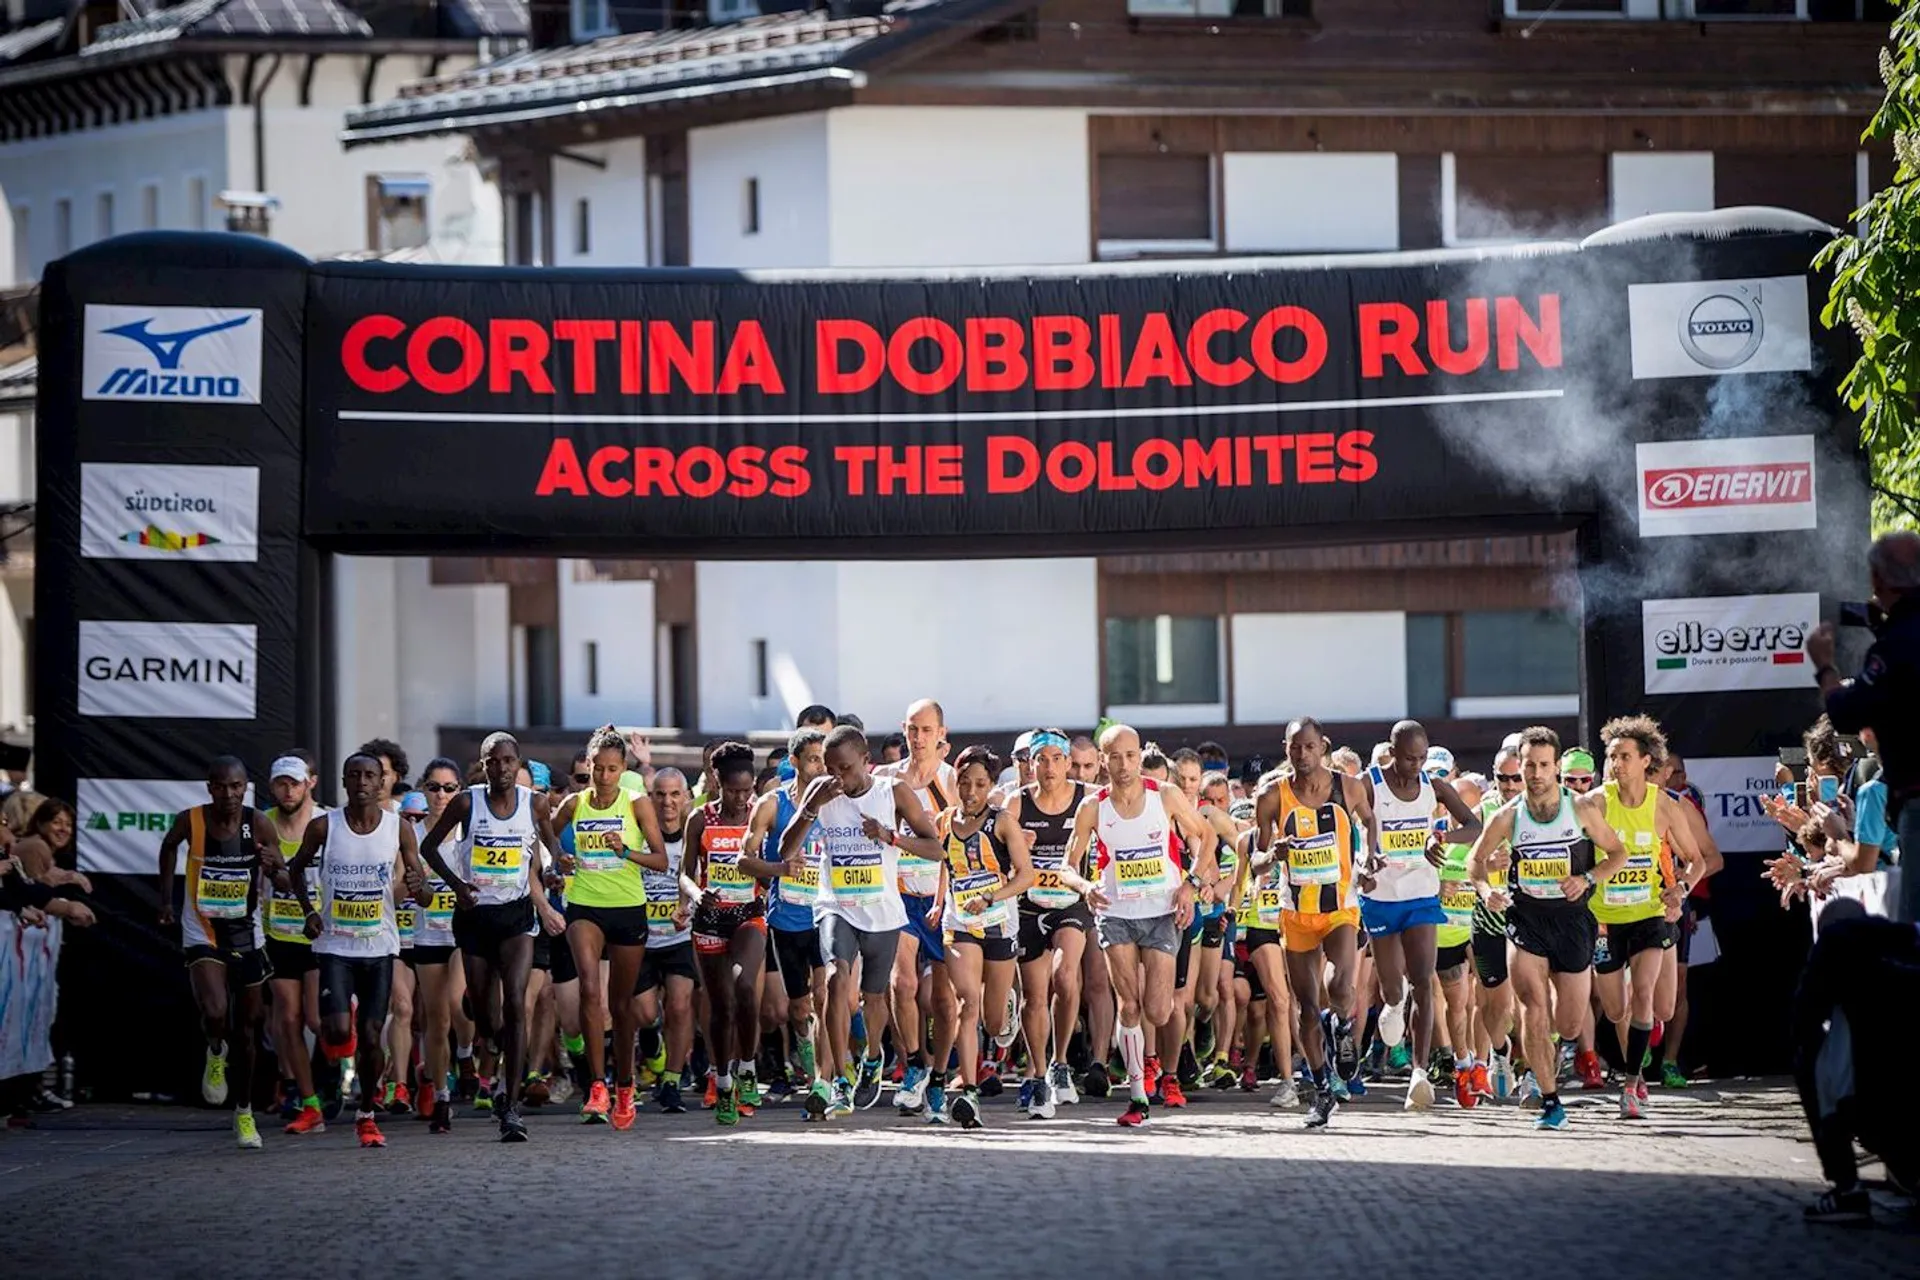 Cortina-Dobbiaco Run